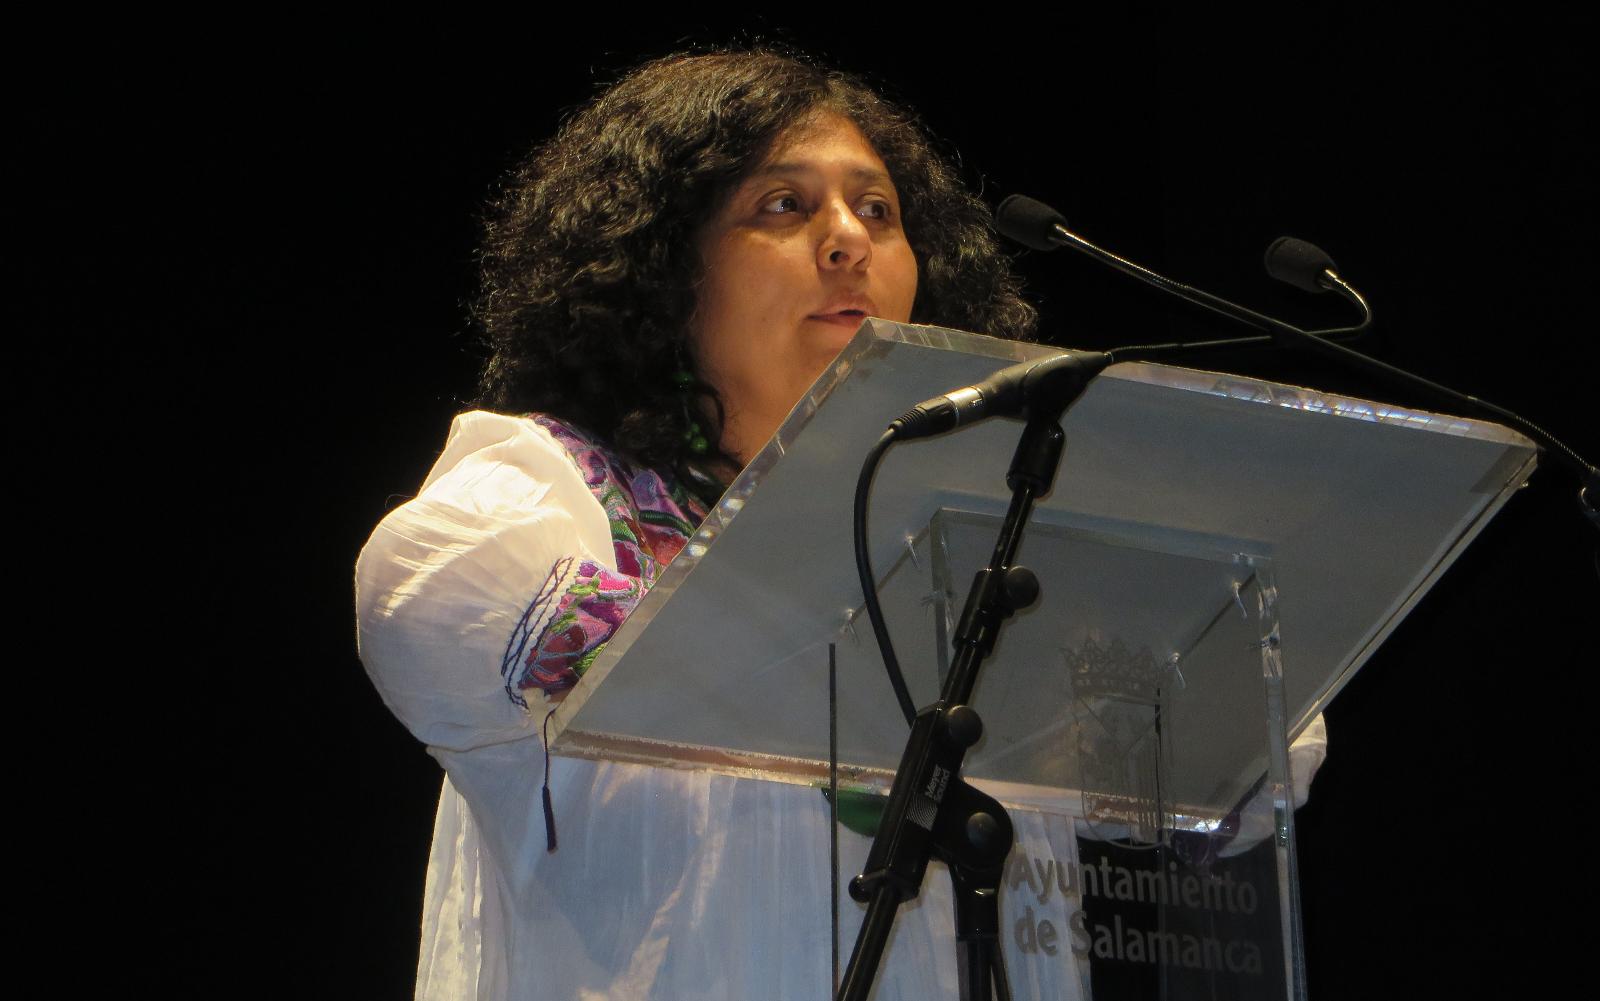 Foto 6 - La boliviana Paura Rodríguez Leytón recibe el Accésit del IV Premio Internacional de Poesía...